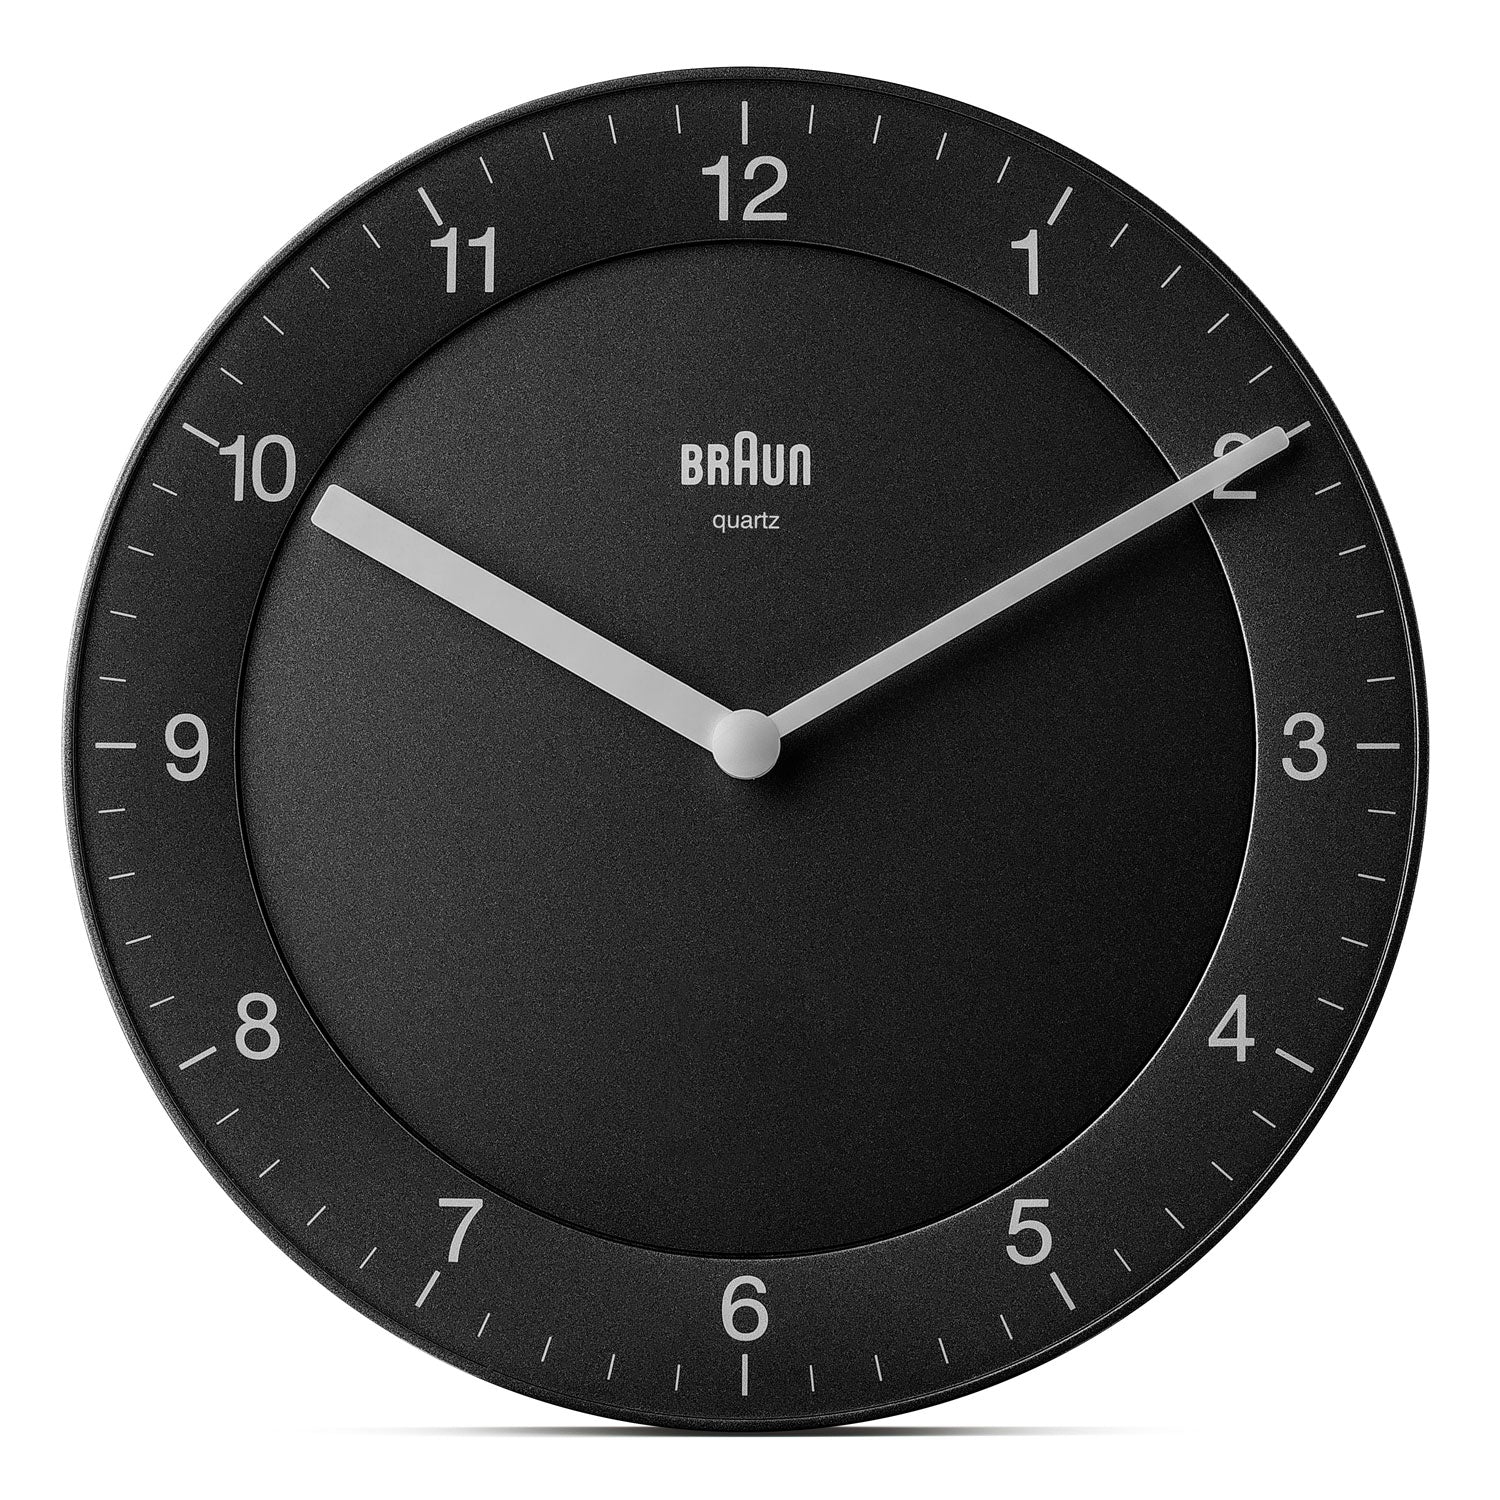 Braun Classic Wall Clock - Black - BC06B